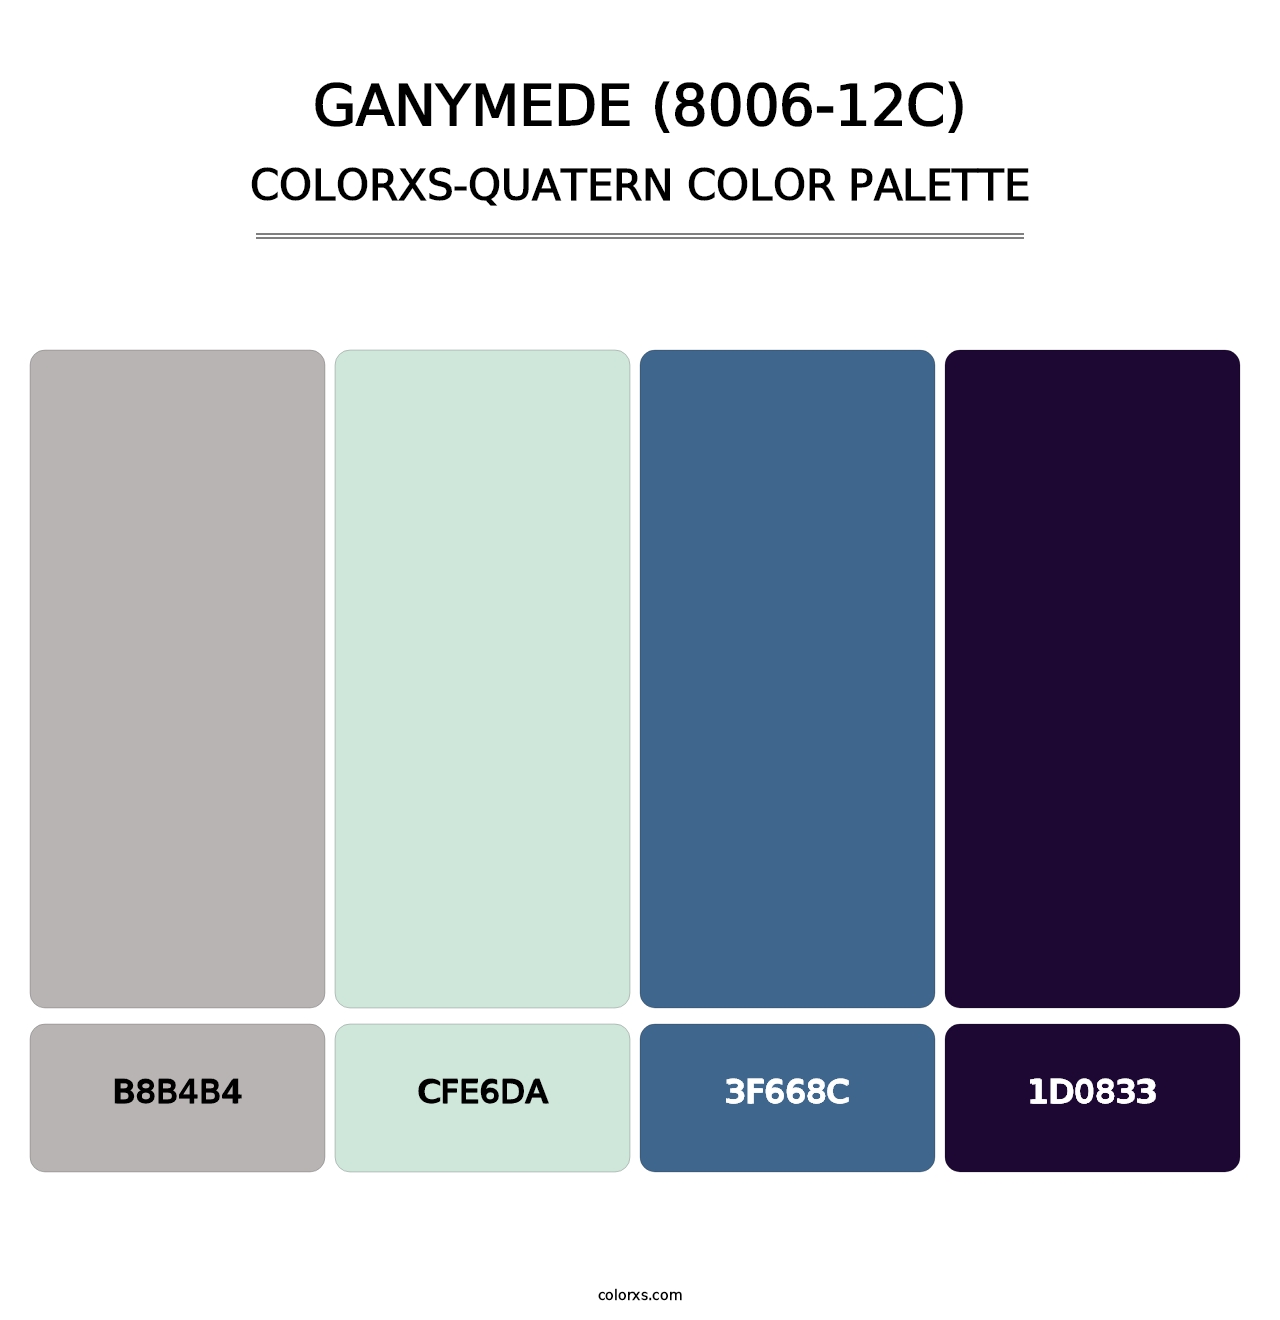 Ganymede (8006-12C) - Colorxs Quatern Palette